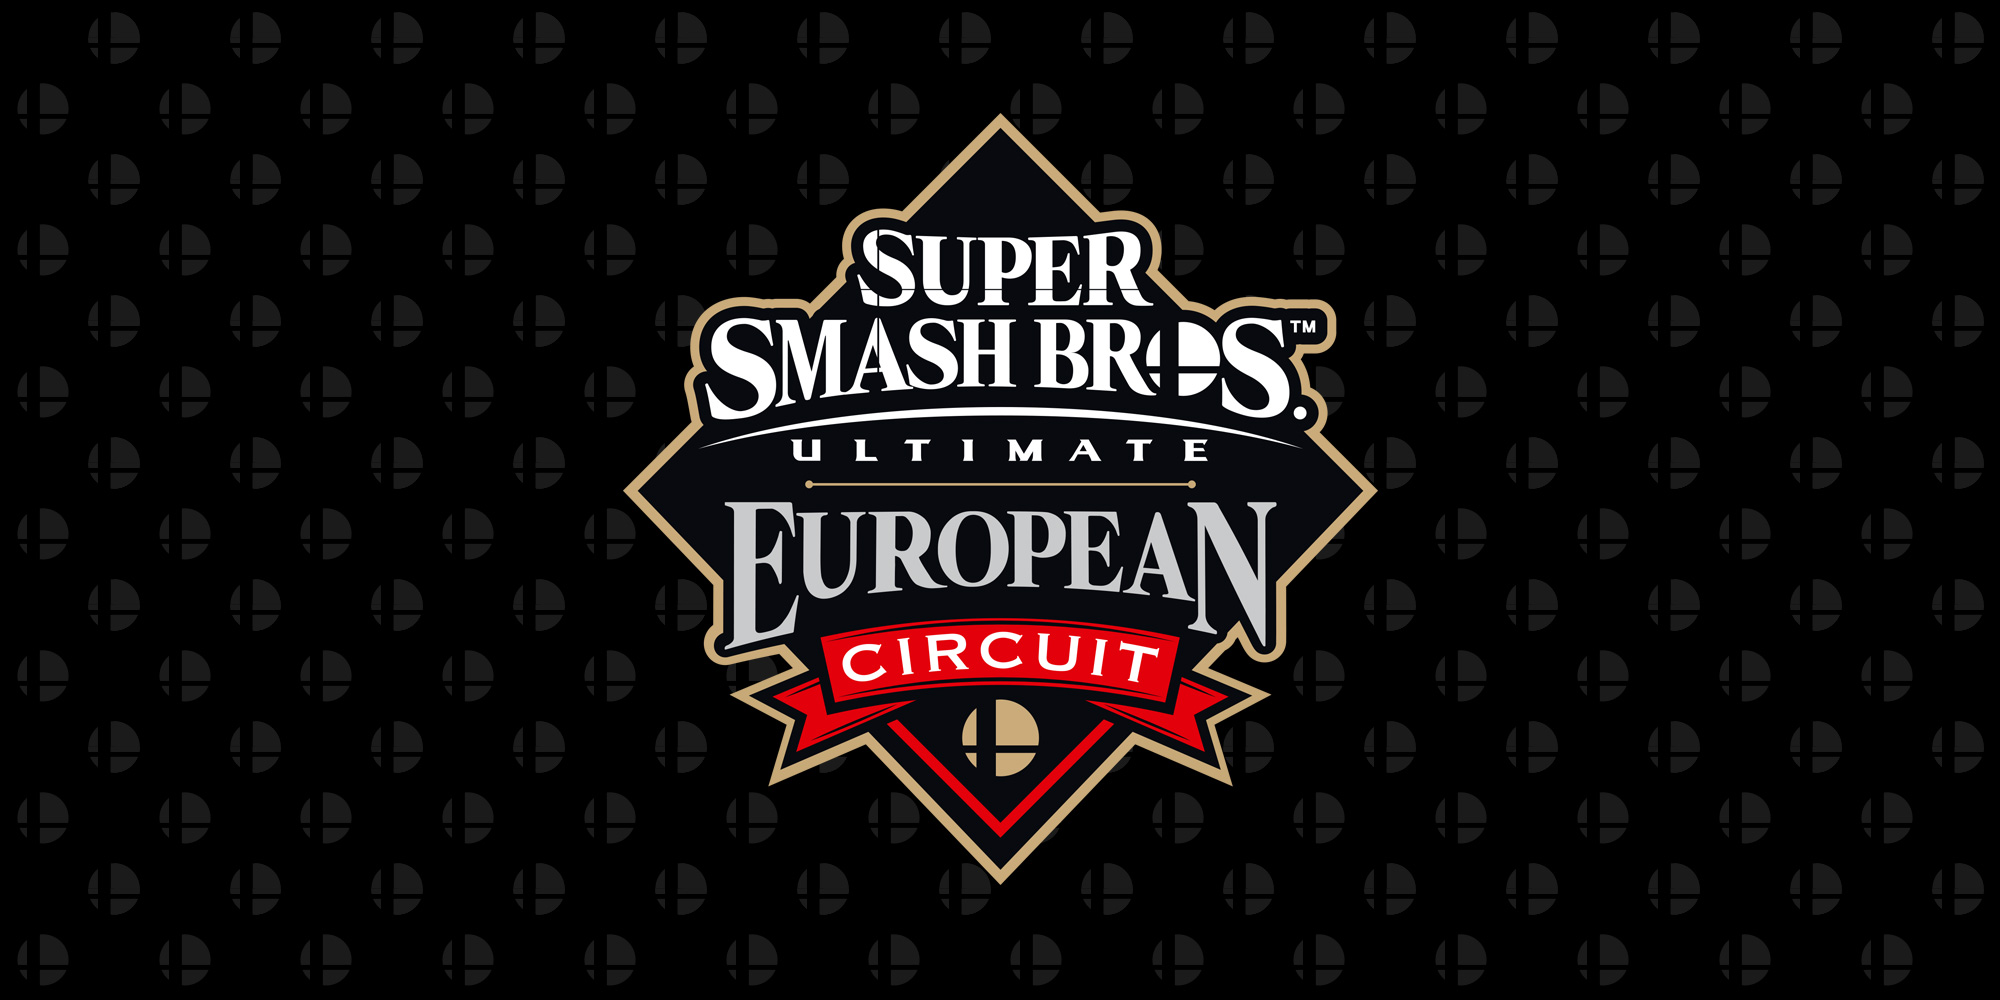 ¡Clasificaos para la gran fase final del Super Smash Bros. Ultimate European Circuit en la ronda de repesca, que se celebrará del 12 al 13 de junio en el DreamHack Summer!